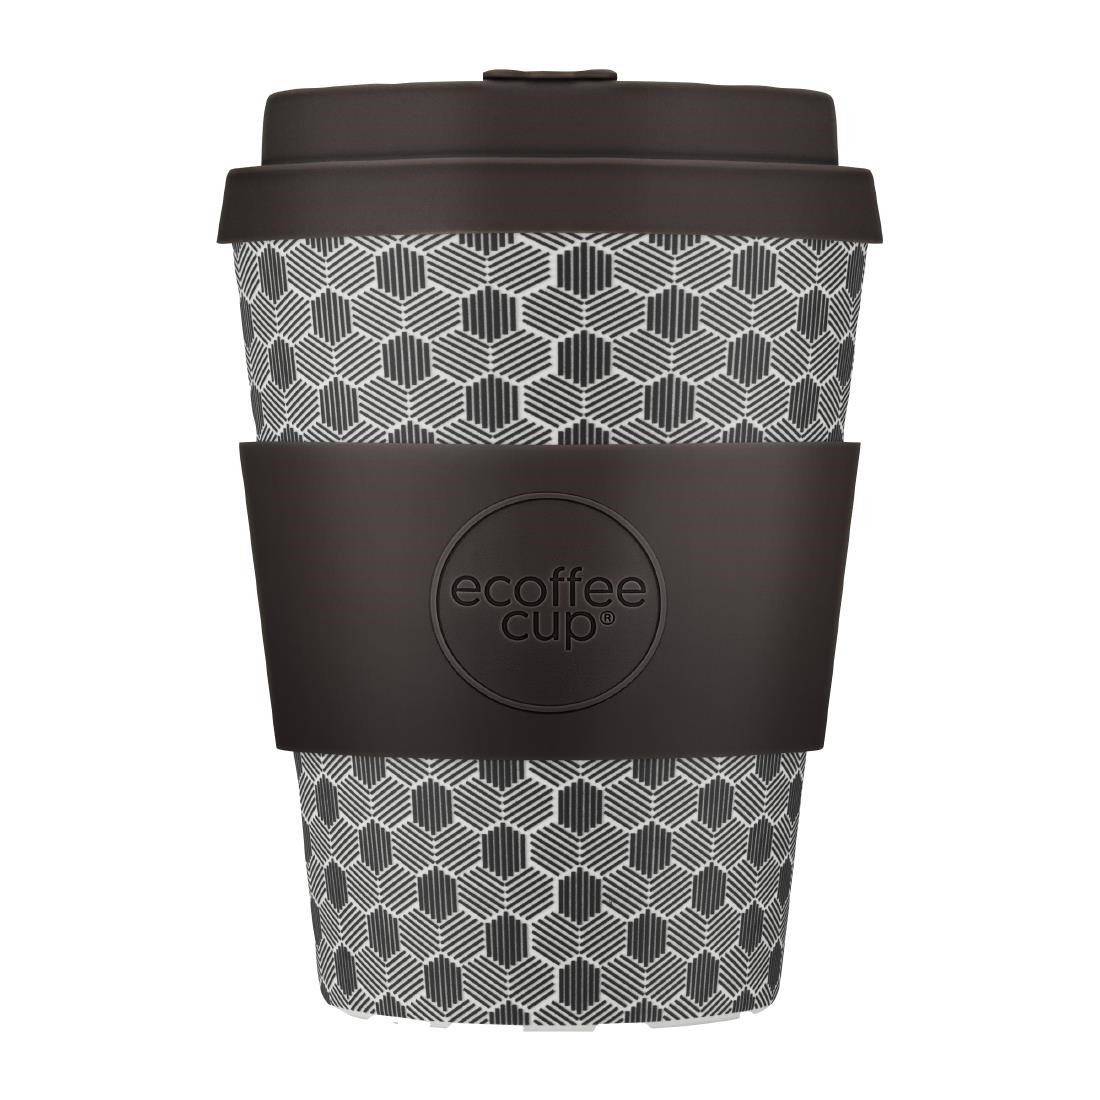 ecoffee cup Reusable Coffee Cup Fermis Paradox Design 12oz (CU490)